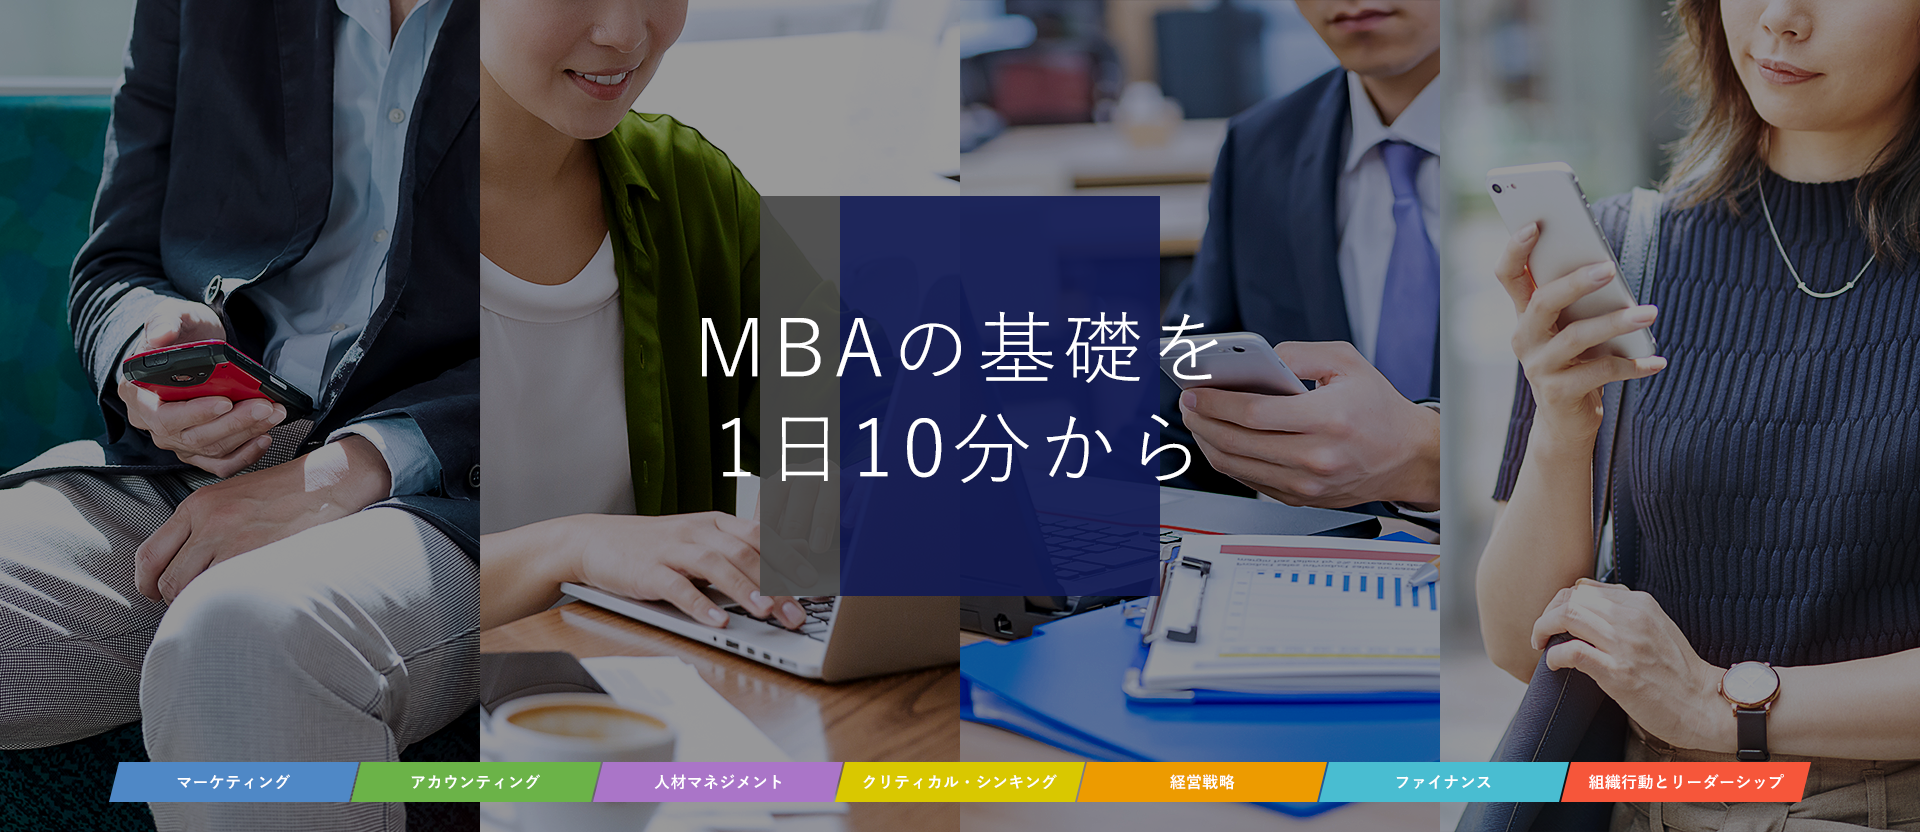 いつでも どこでも MBAの基礎を 1日10分から 学べる。